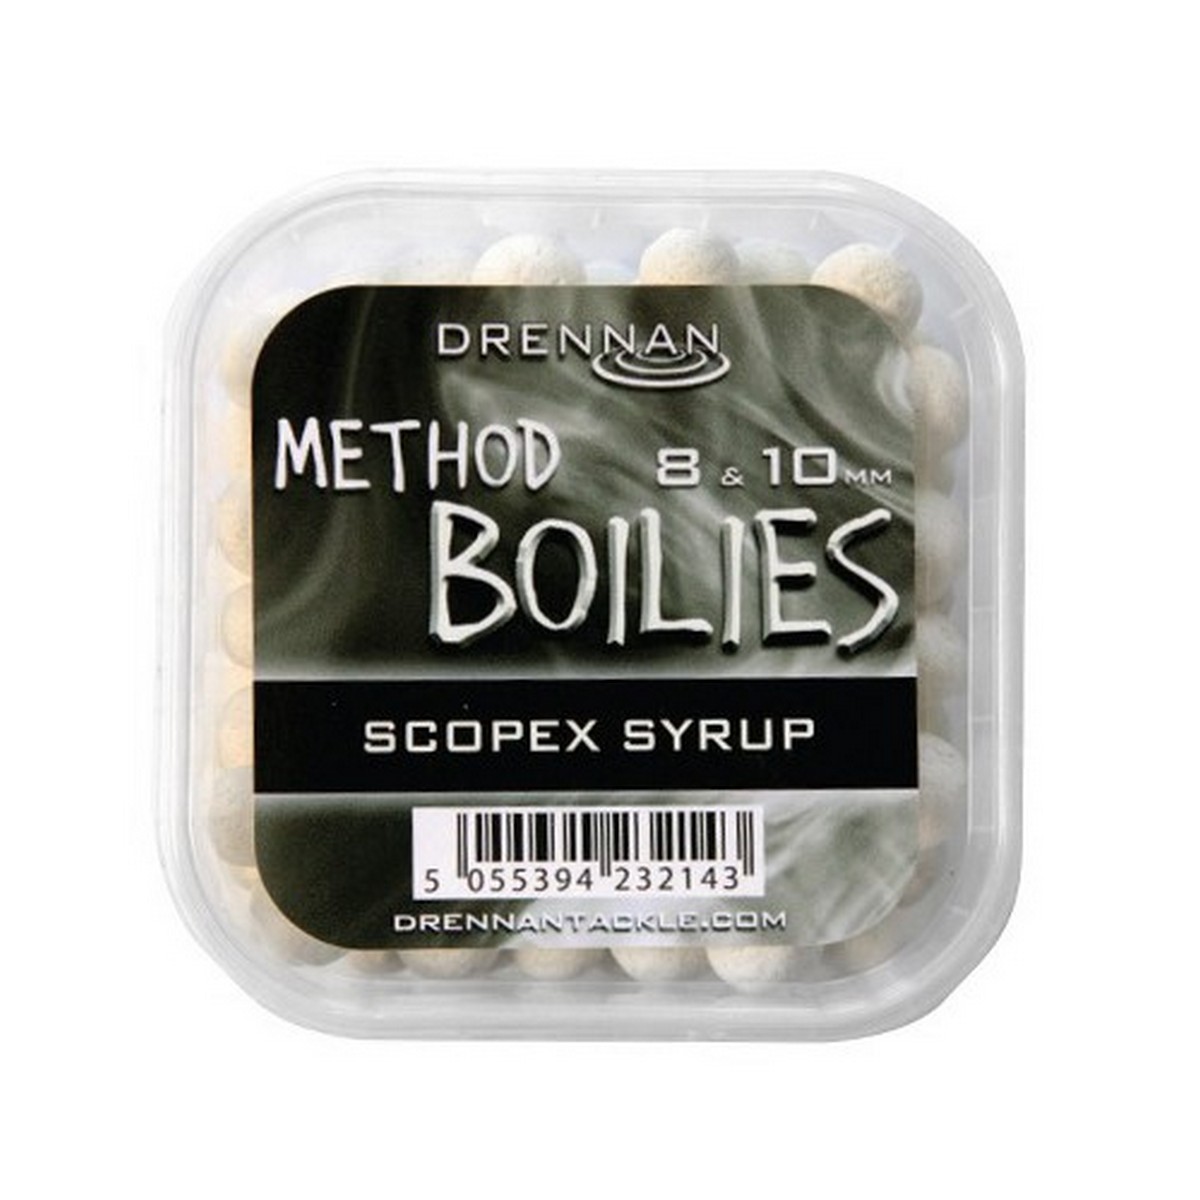 Топчета за метод фидер Drennan Method Boilies Scopex Syrup